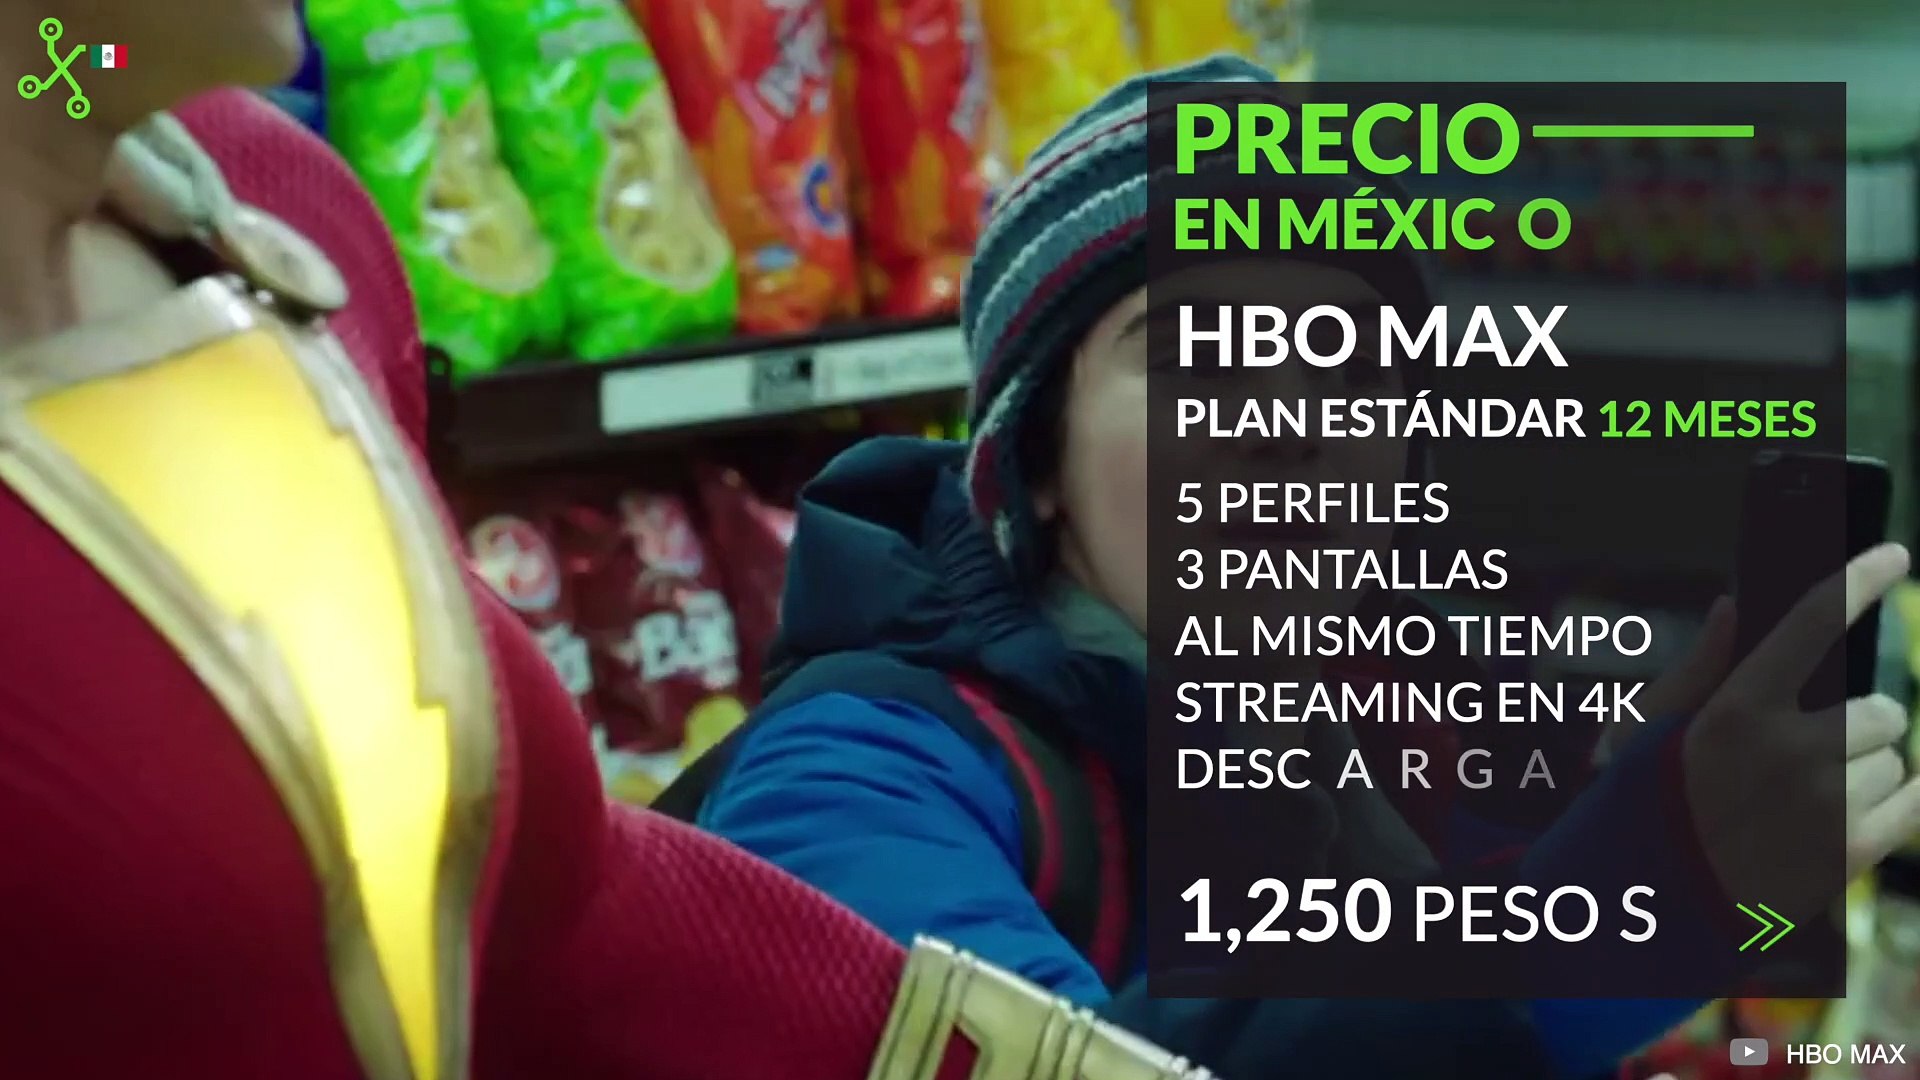 HBO MAX llega a MÉXICO: PRECIO y planes REVELADOS